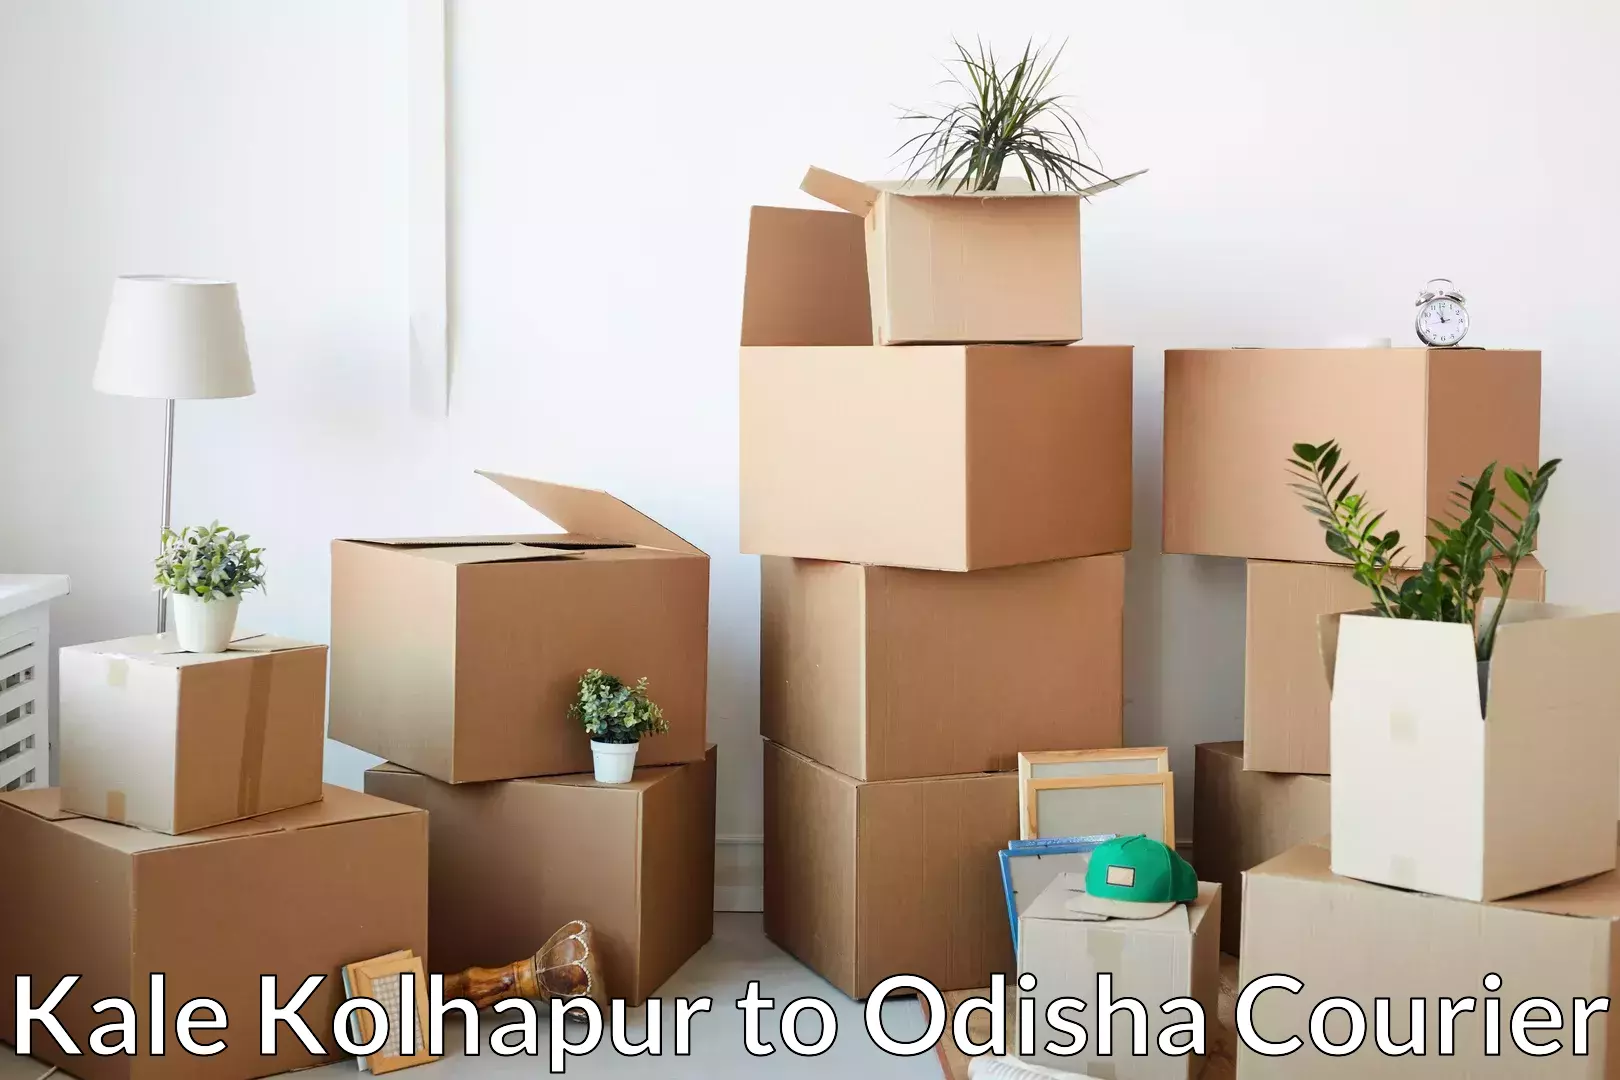 Skilled furniture transporters Kale Kolhapur to Nabarangpur